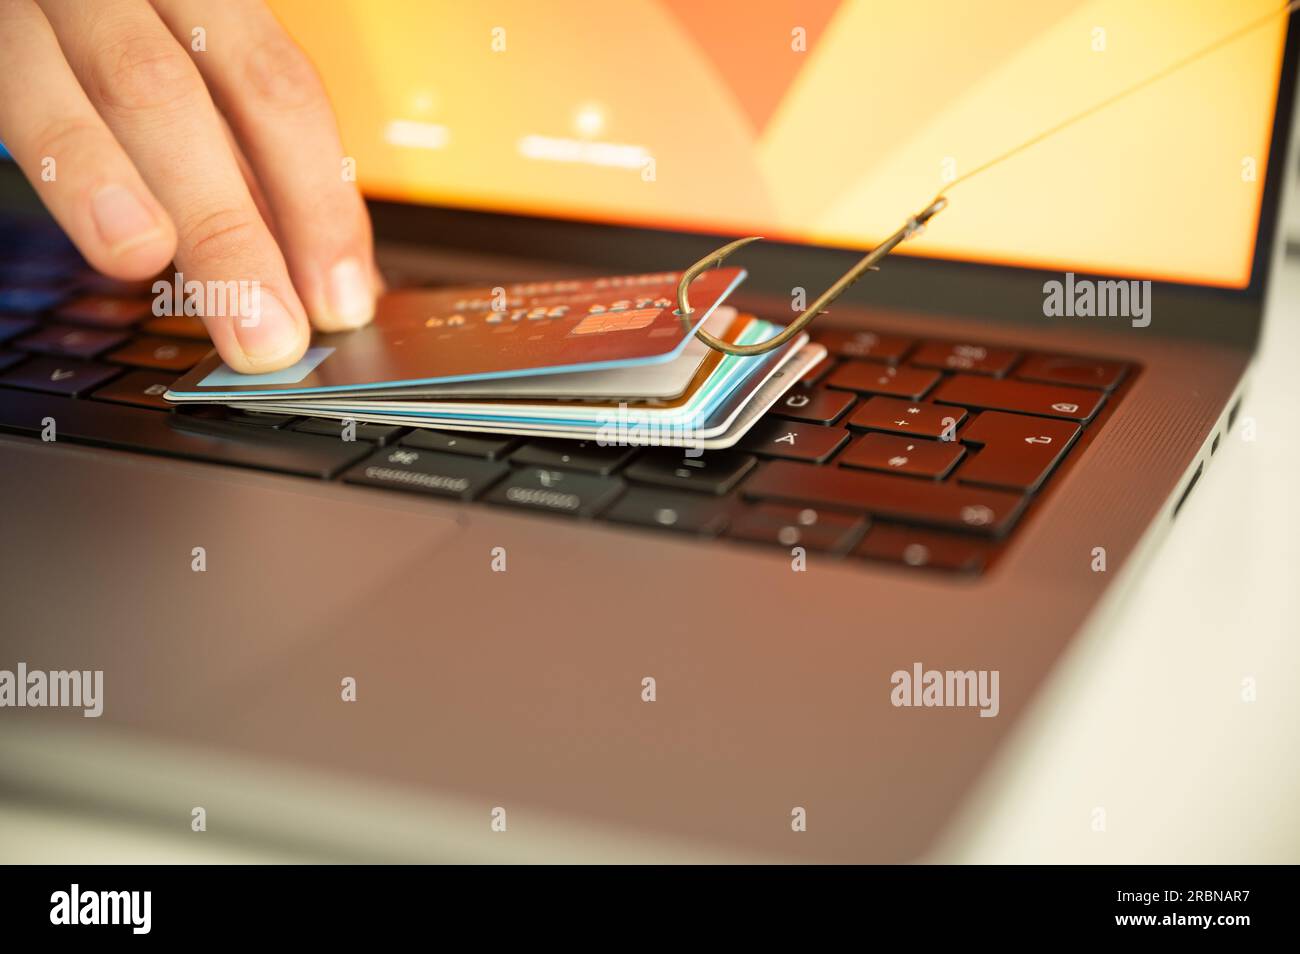 Visualización de una persona que intenta prevenir el phishing y el fraude en línea sosteniendo una tarjeta de crédito filtrada en un teclado de PC que está colgado de un gancho Foto de stock